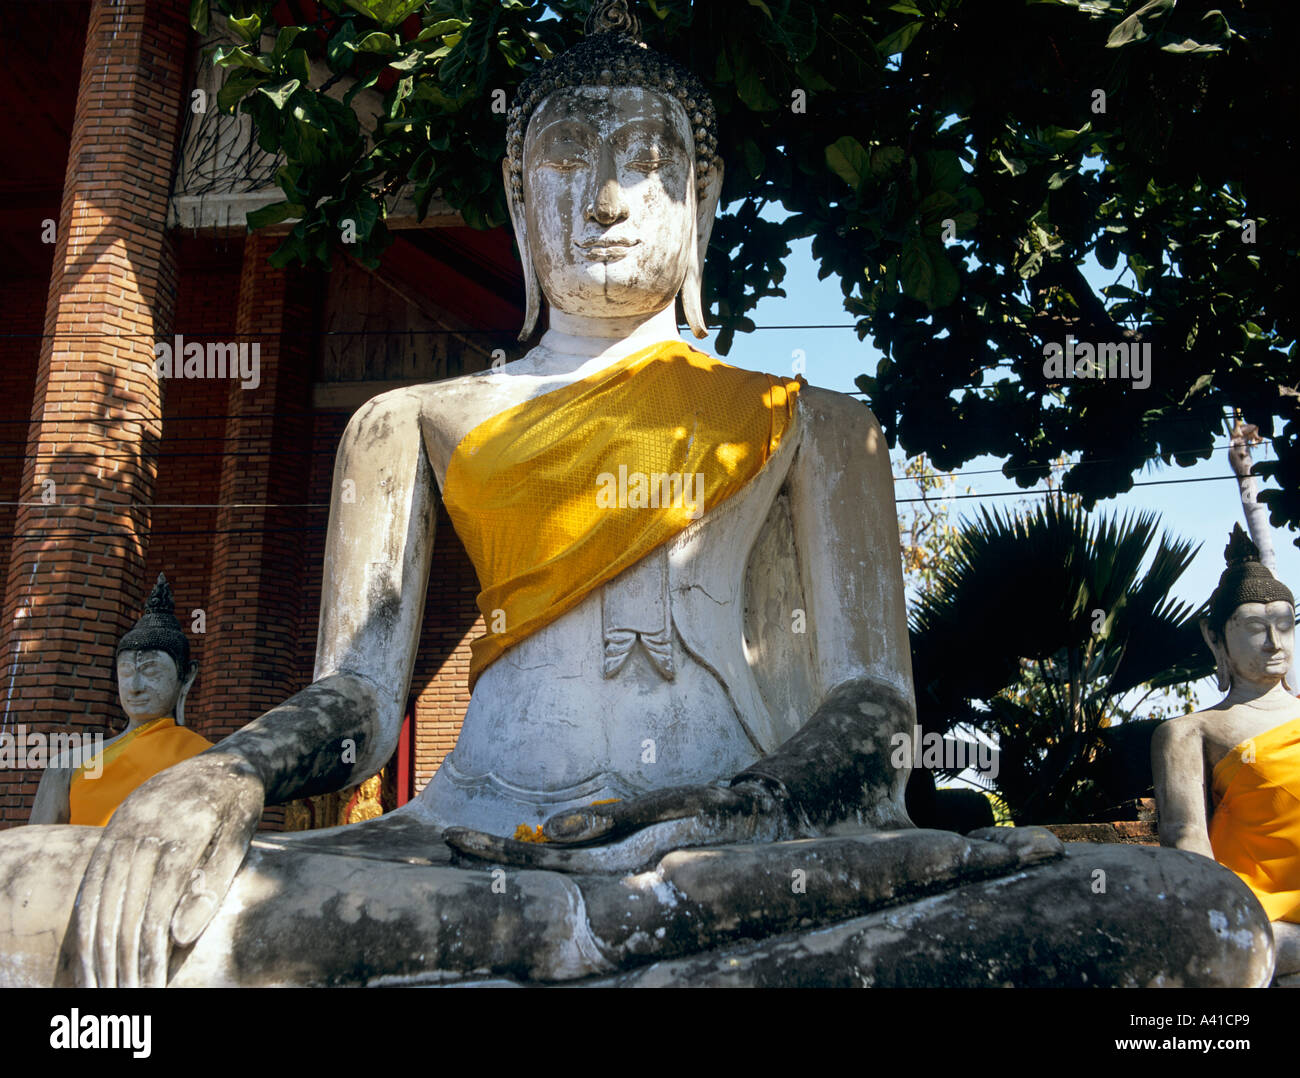 Bouddha en pierre avec robe safran l'ancienne ville d'Ayuthaya Thaïlande Asie du sud-est Banque D'Images